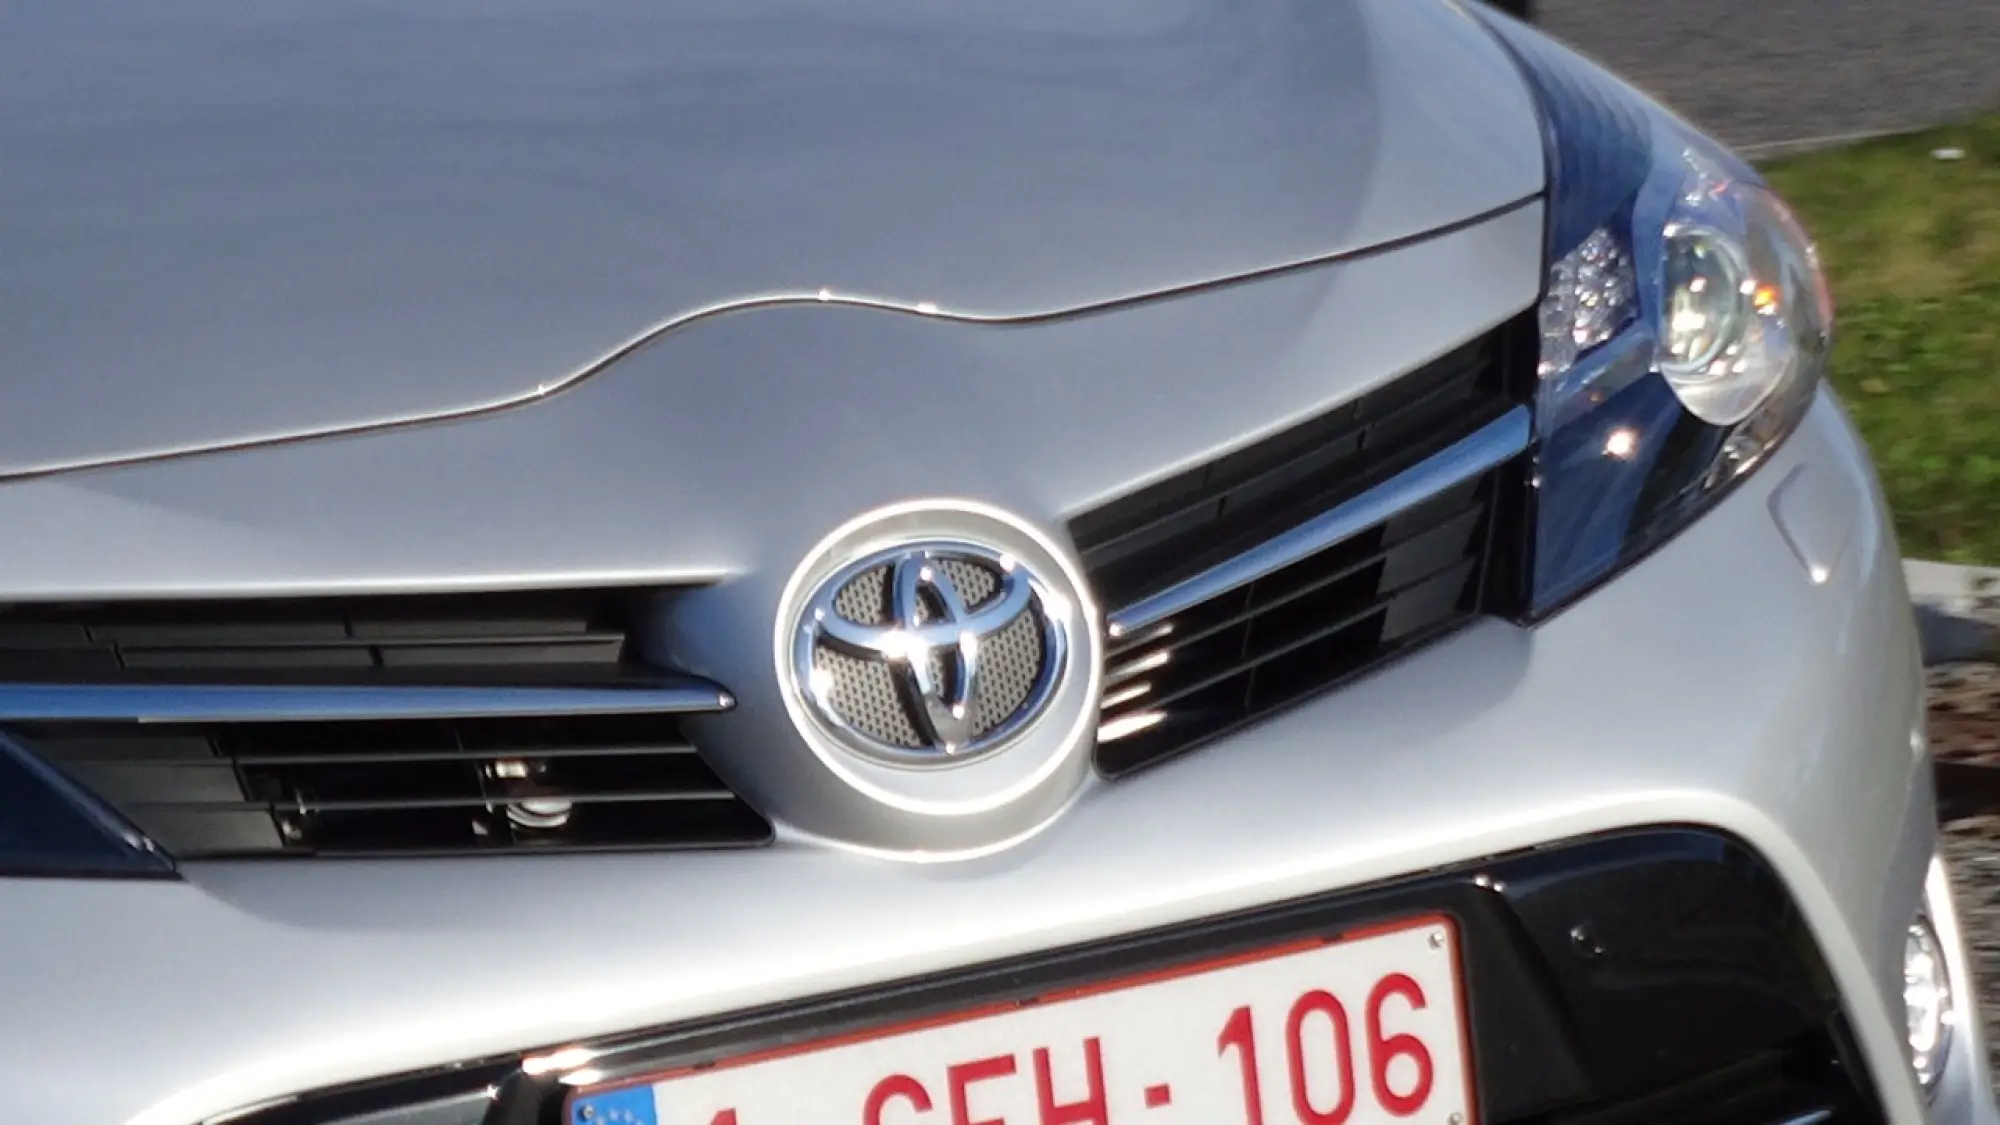 Toyota Verso MY 2014 1.6 D-4D - 41